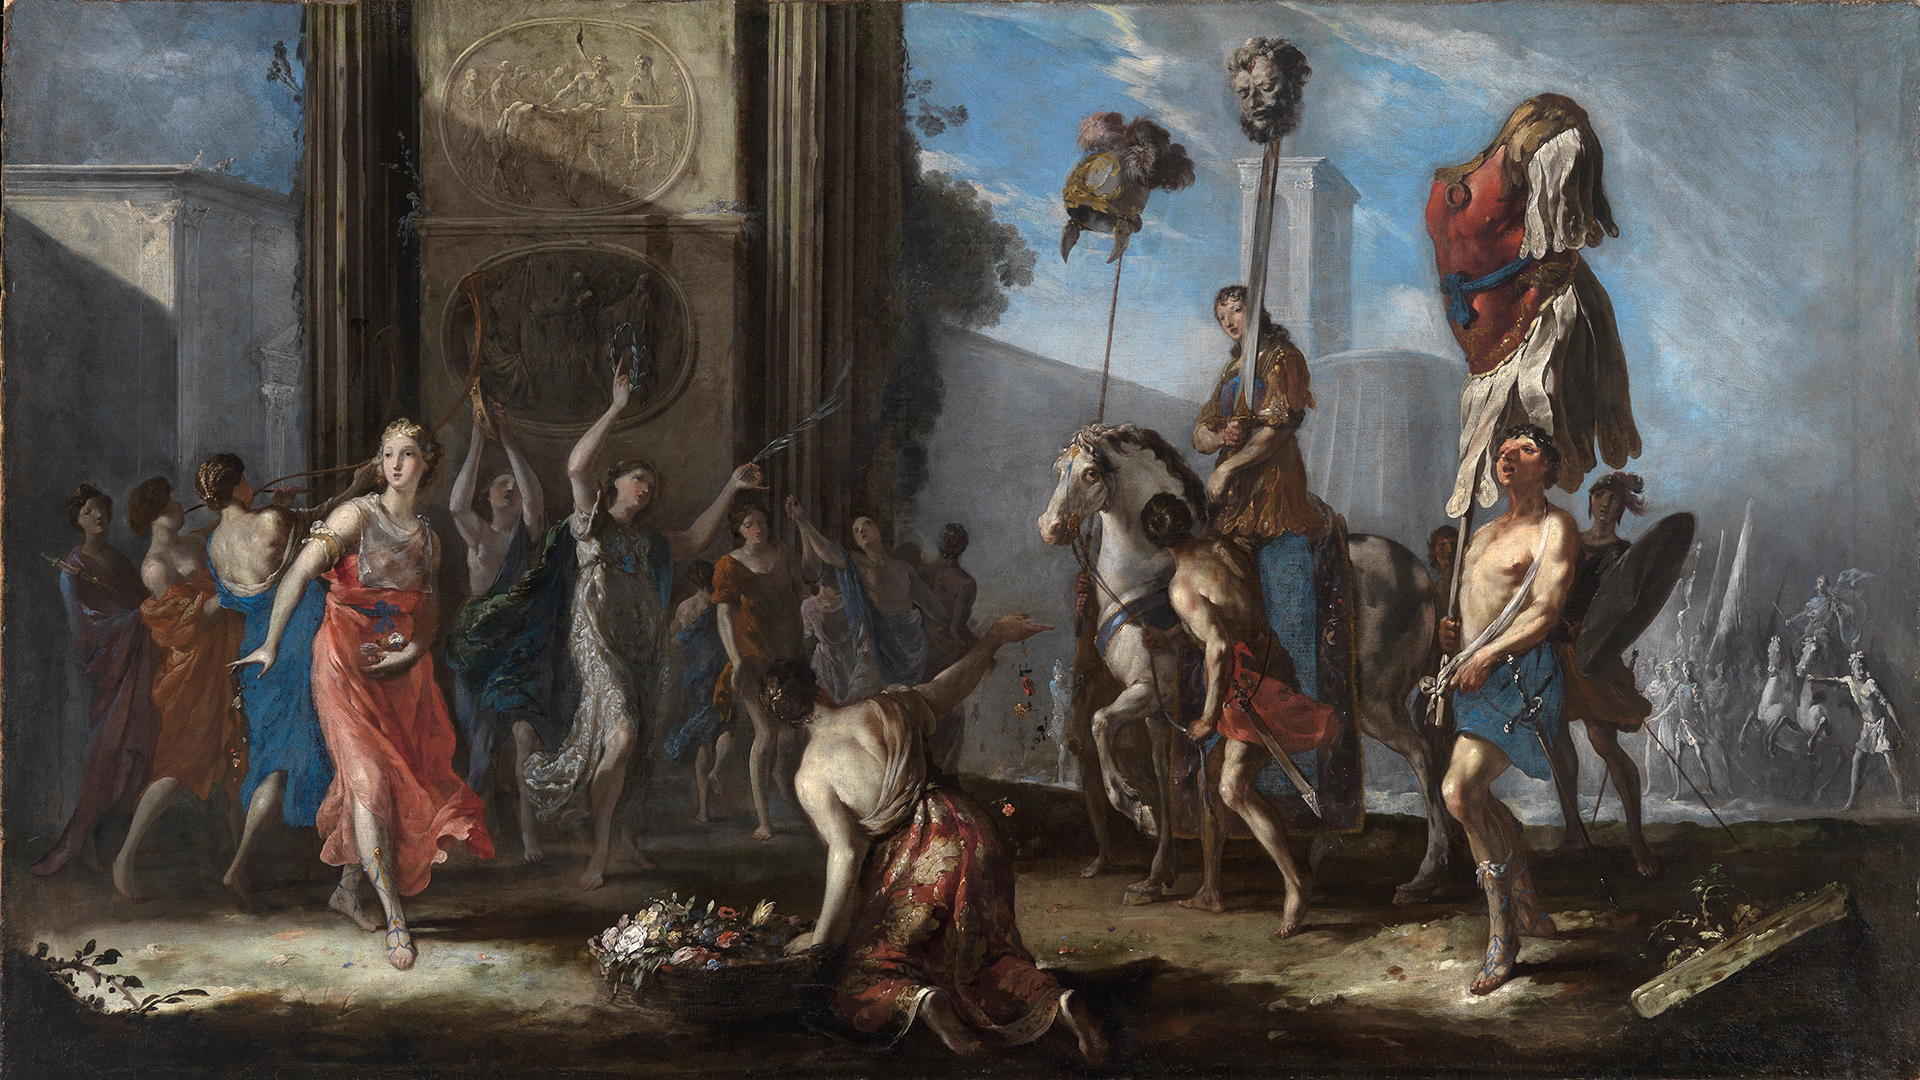 Gemälde von Johann Heinrich Schönfeld, das den Triumphzug des David nach seinem Sieg über Goliath zeigt